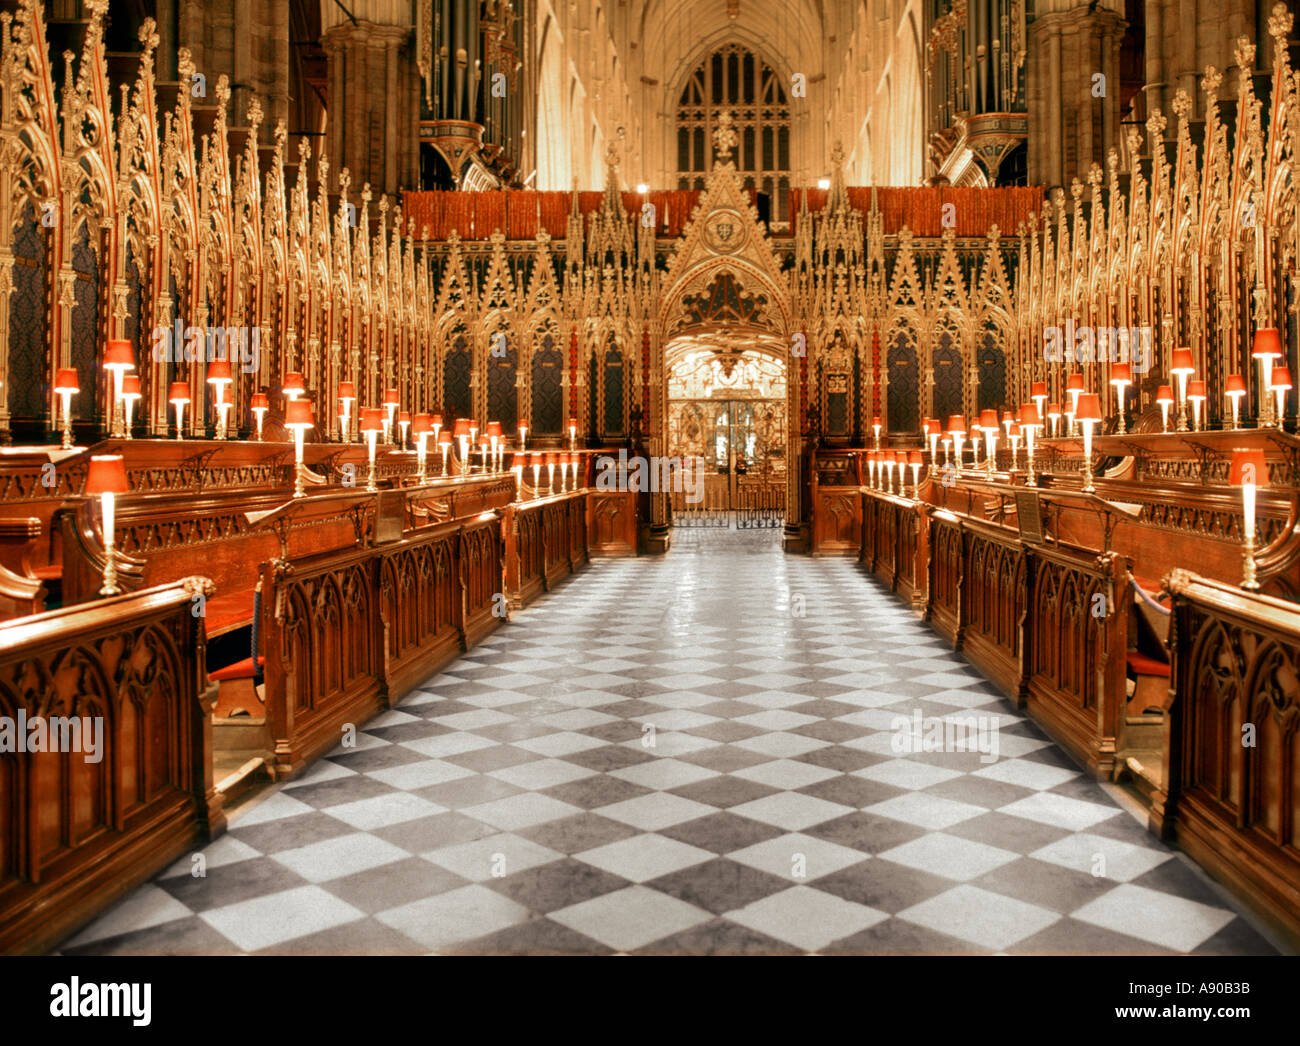 Il coro dell'Abbazia di Westminster ospita parte degli interni storici della Collegiate Church of England edificio storico di grado i reale a Londra Inghilterra Regno Unito Foto Stock